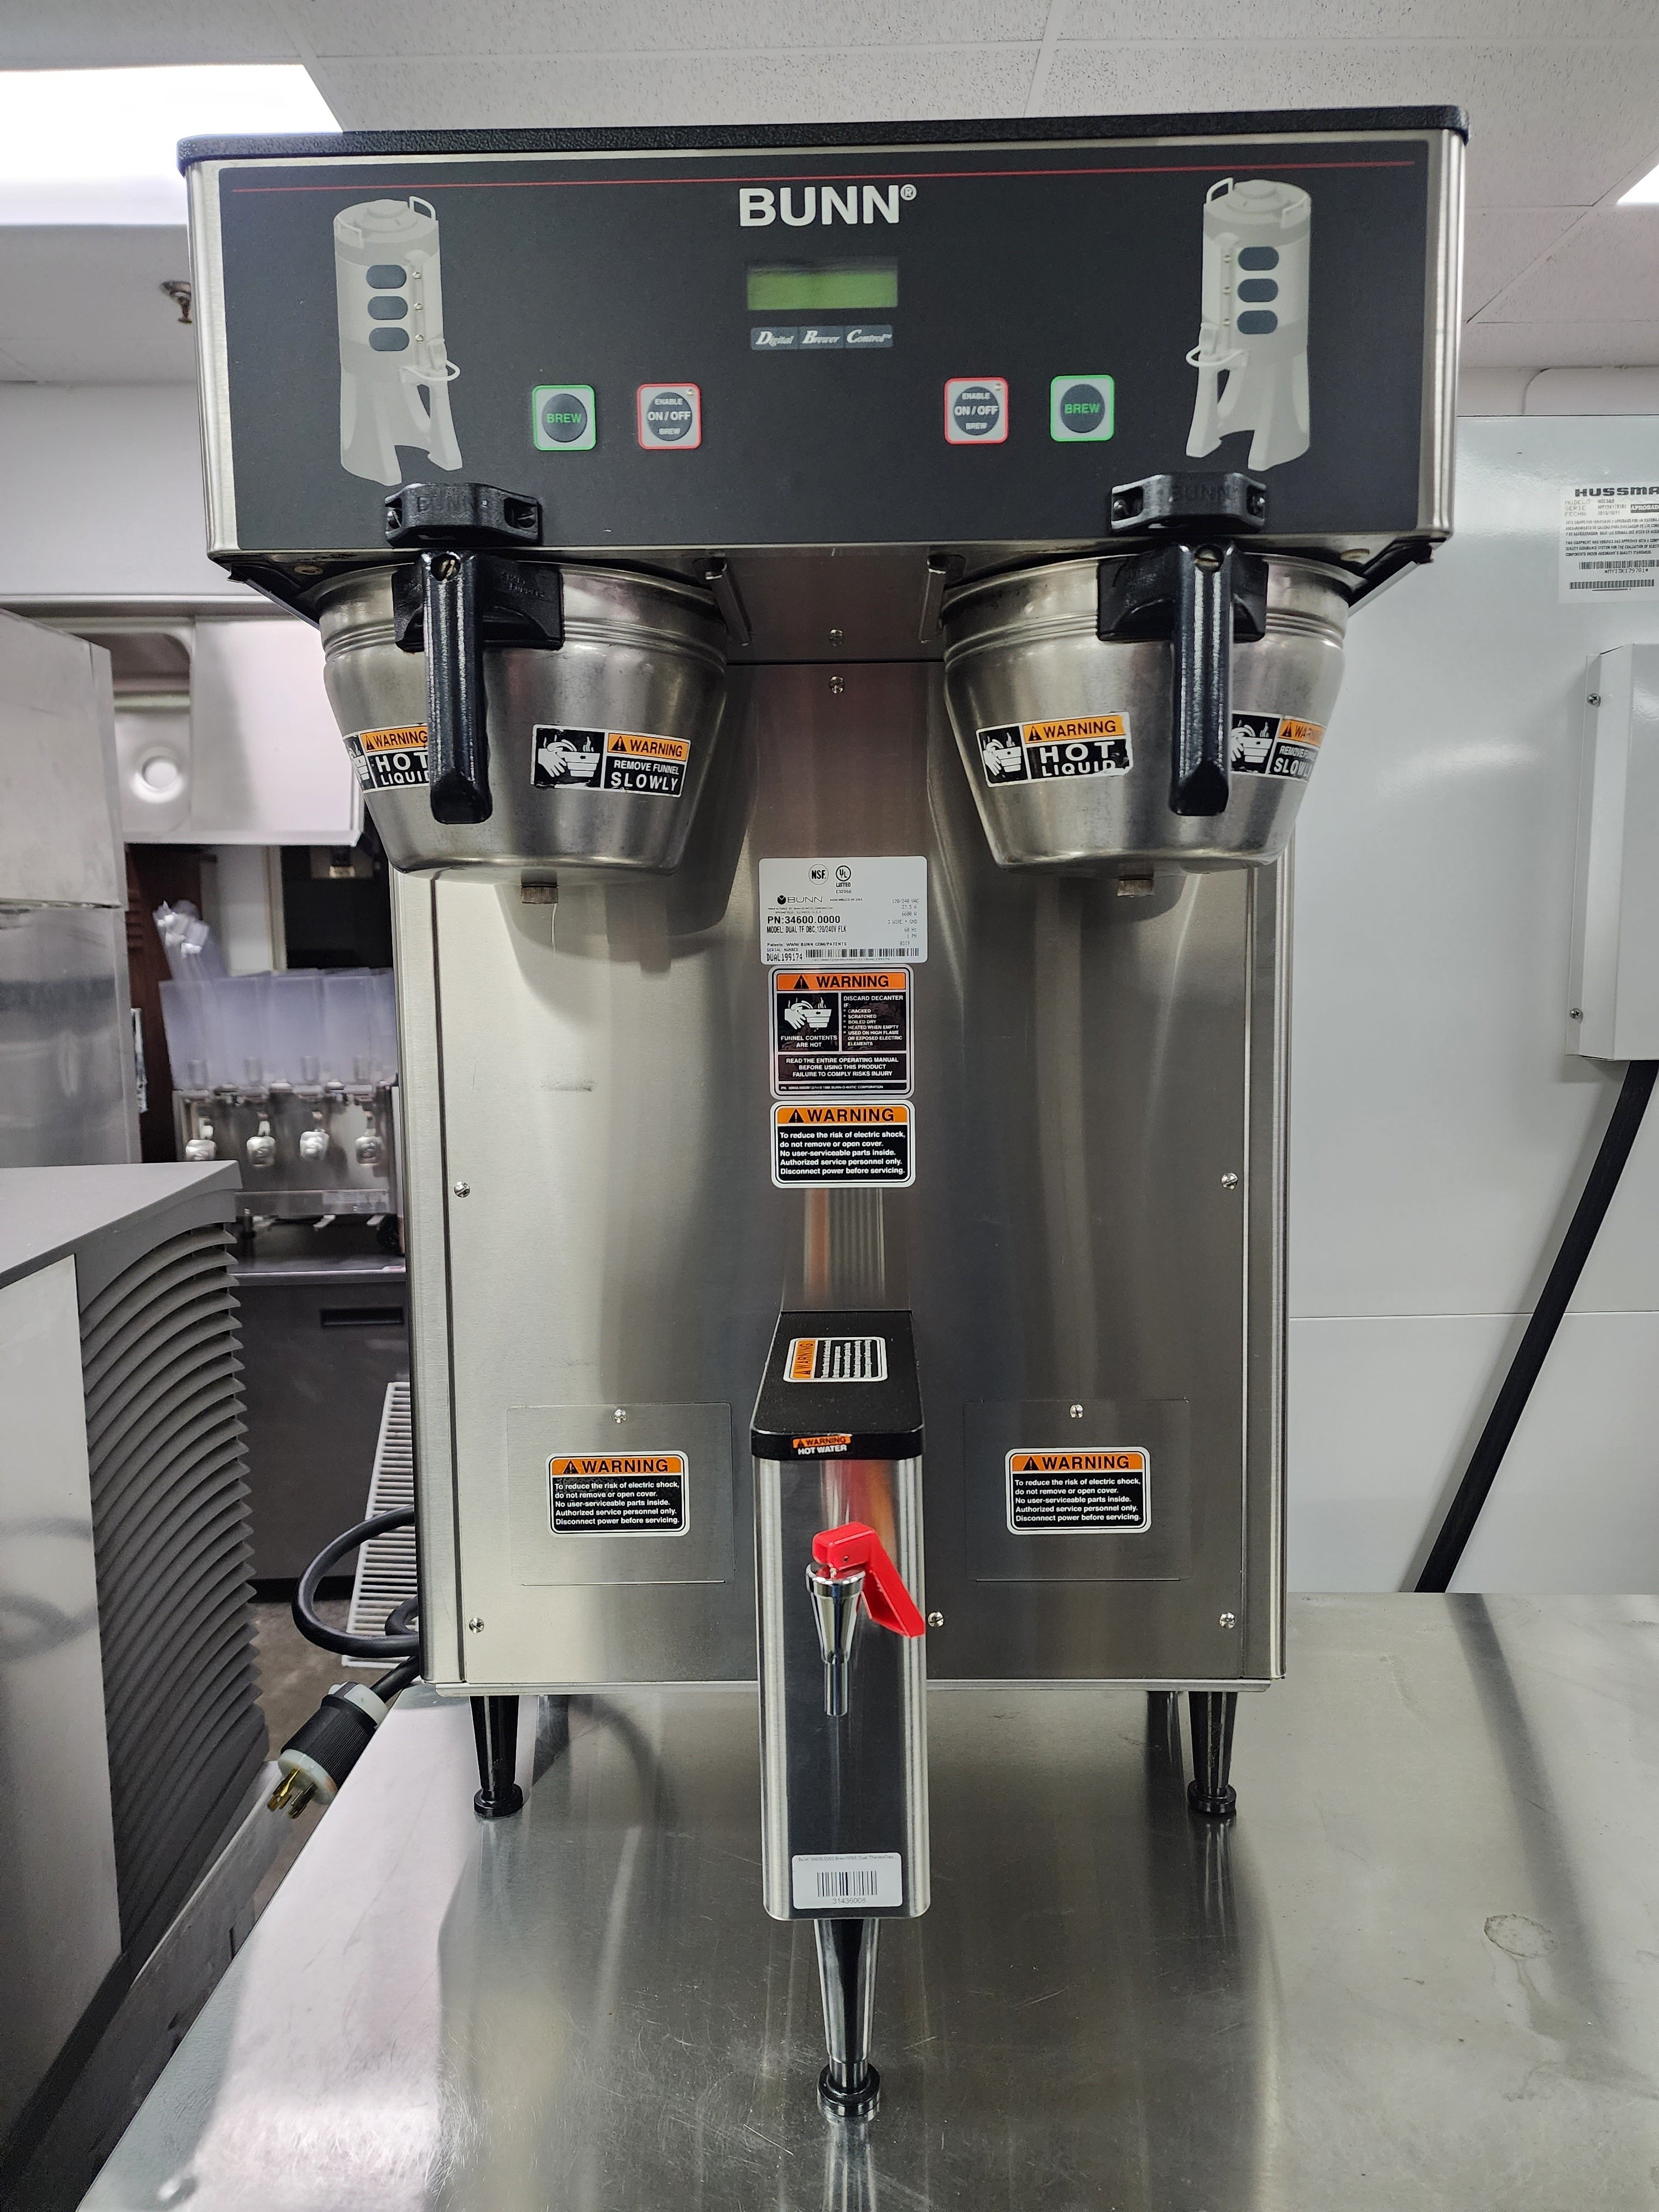 Bunn 38700.0010 AXIOM-DV-APS Dual Voltage Airpot Coffee Brewer